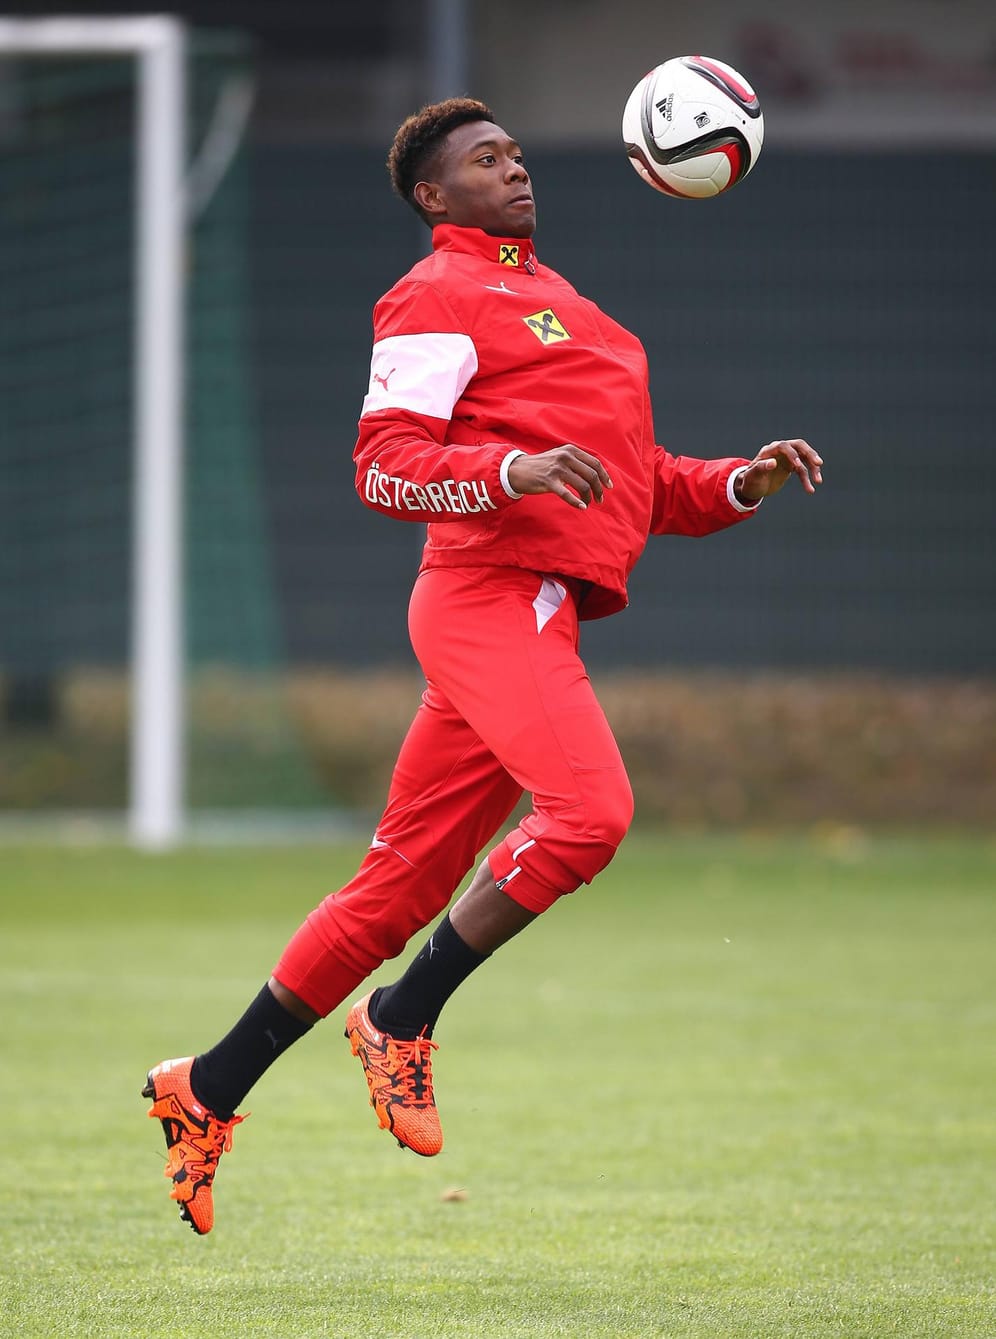 David Alaba gilt als vielleicht weltbester Linksverteidiger. Bei den Österreichern spielt der 23-Jährige vom FC Bayern aber im zentralen Mittelfeld und nimmt eine Führungsrolle ein. Der Sonnyboy kann dem Turnier seinen Stempel aufdrücken.